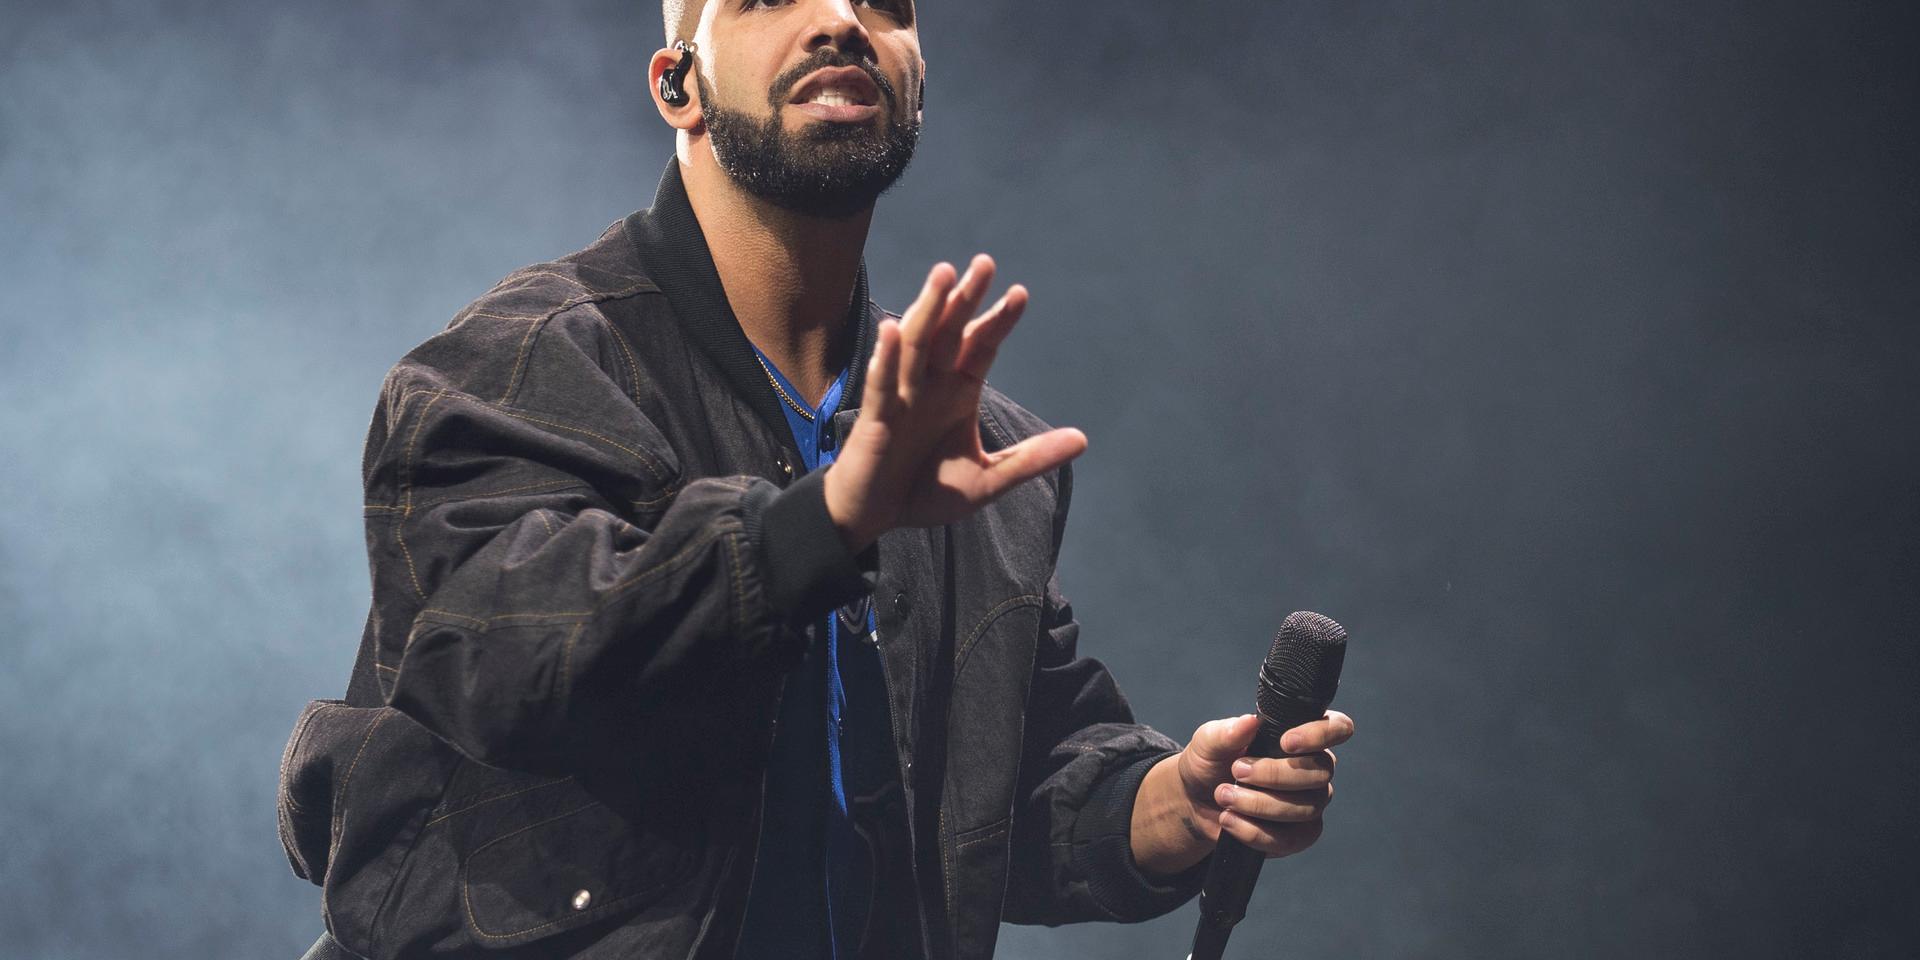 Den kanadensiske rapparen Drake i Sverige i onsdags, men det är oklart om han är här i jobb eller för nöje. Arkivbild.